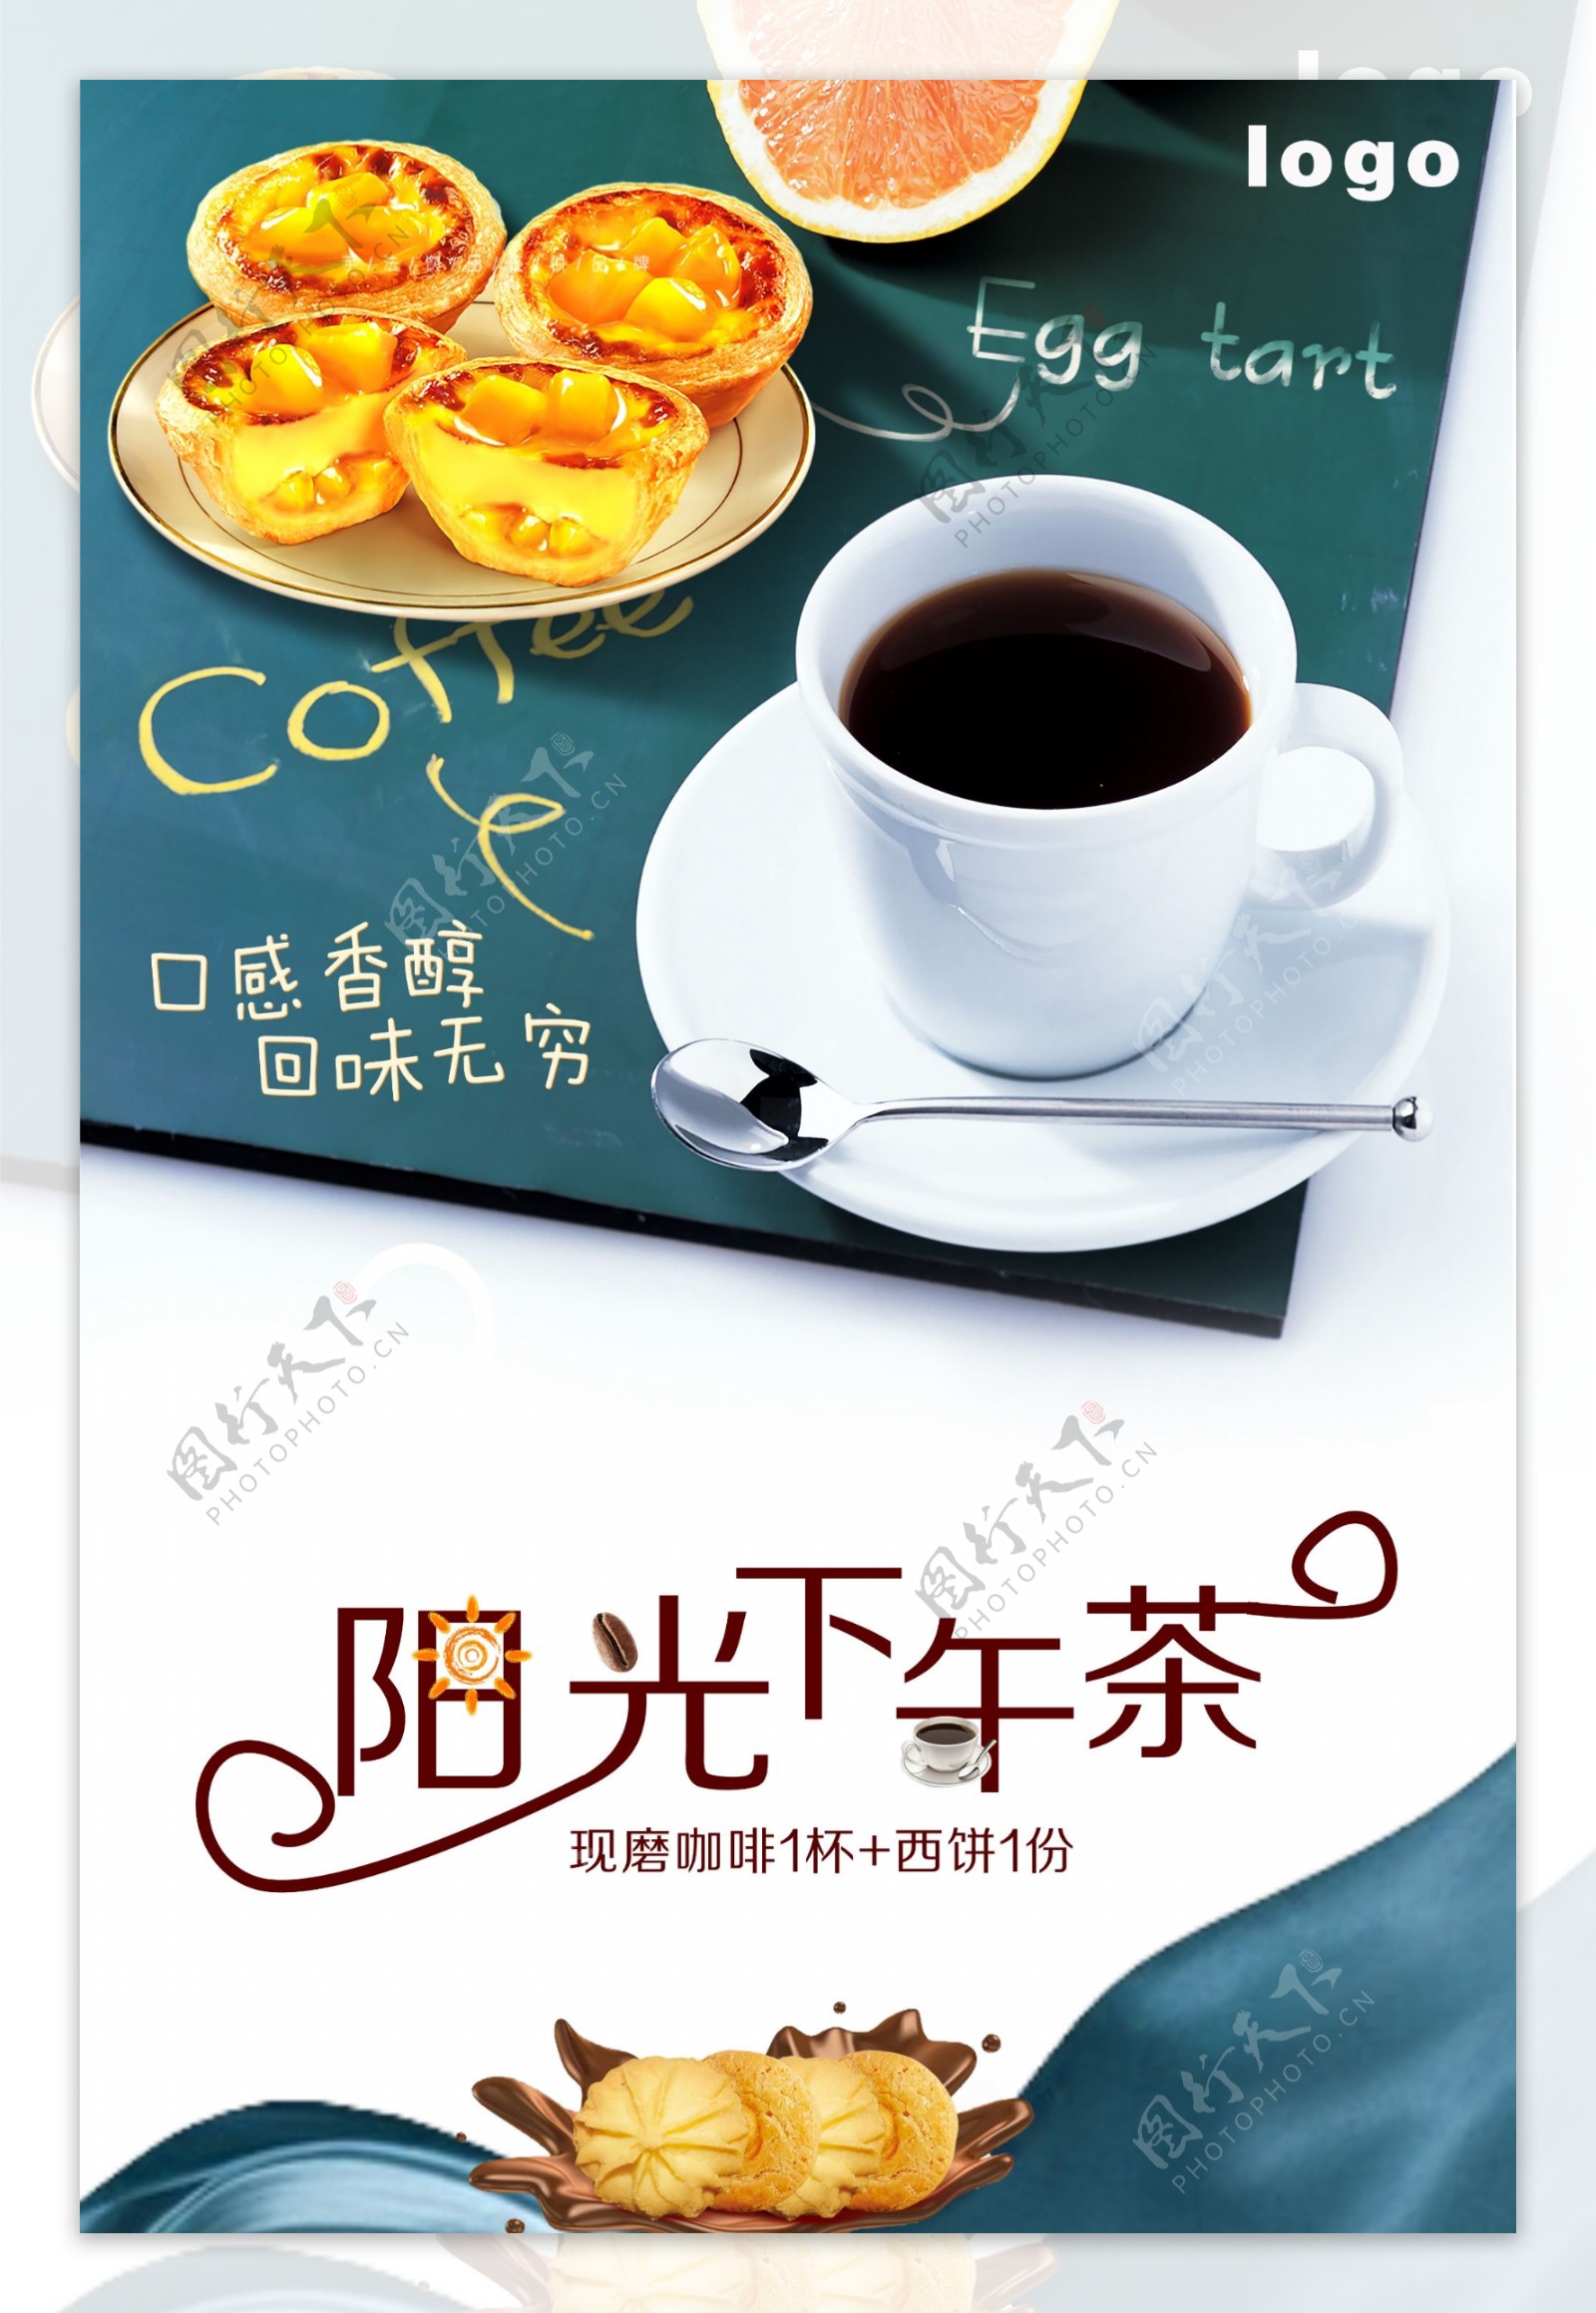 咖啡豆甜点曲奇下午茶美食巧克力餐厅海报.psd